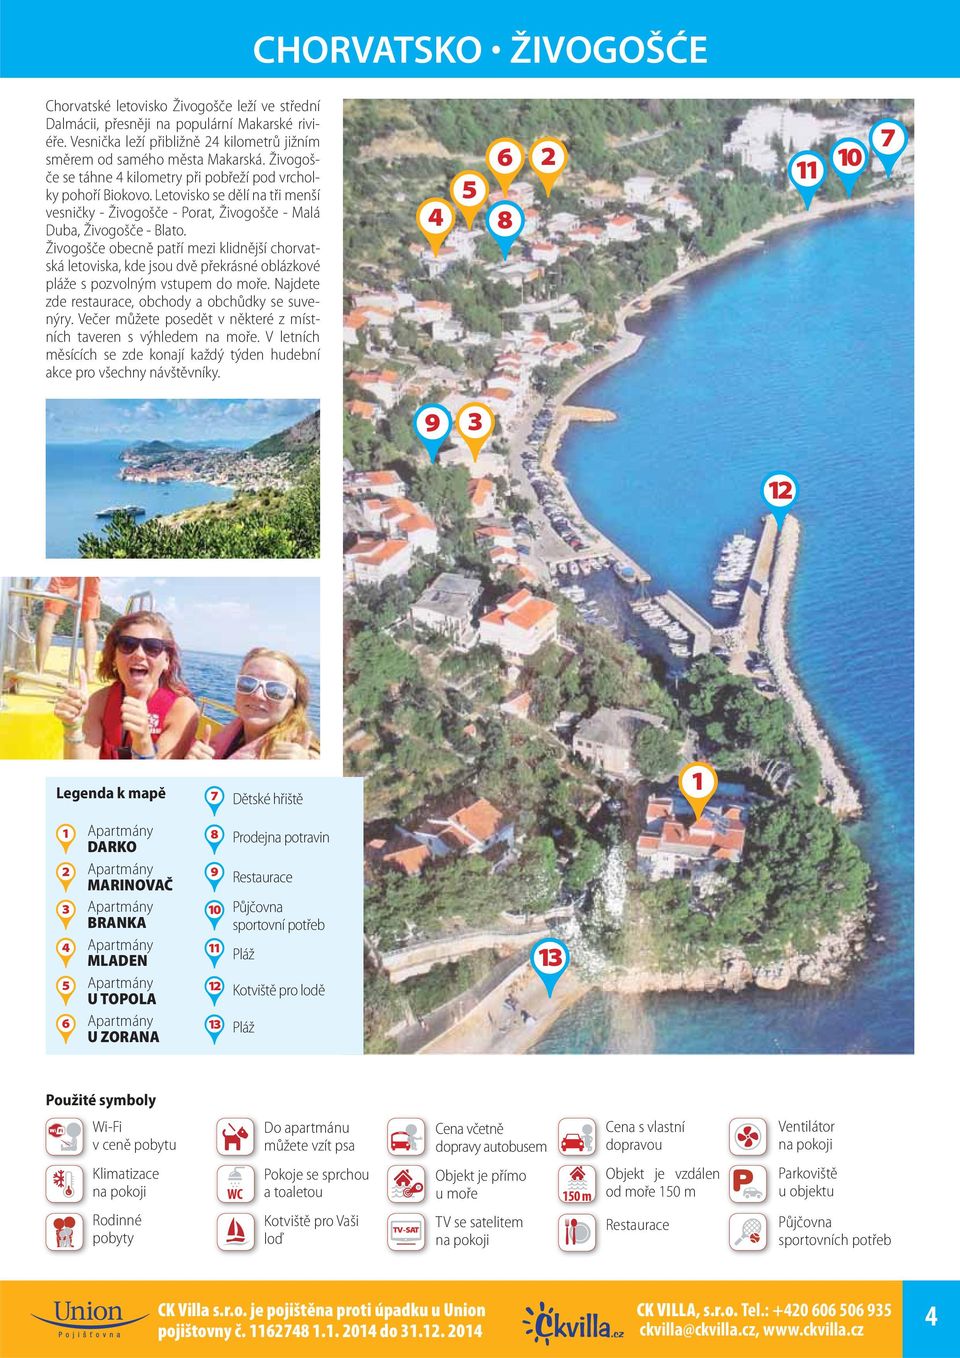 Živogošče obecně patří mezi klidnější chorvatská letoviska, kde jsou dvě překrásné oblázkové pláže s pozvolným vstupem do moře. Najdete zde restaurace, obchody a obchůdky se suvenýry.